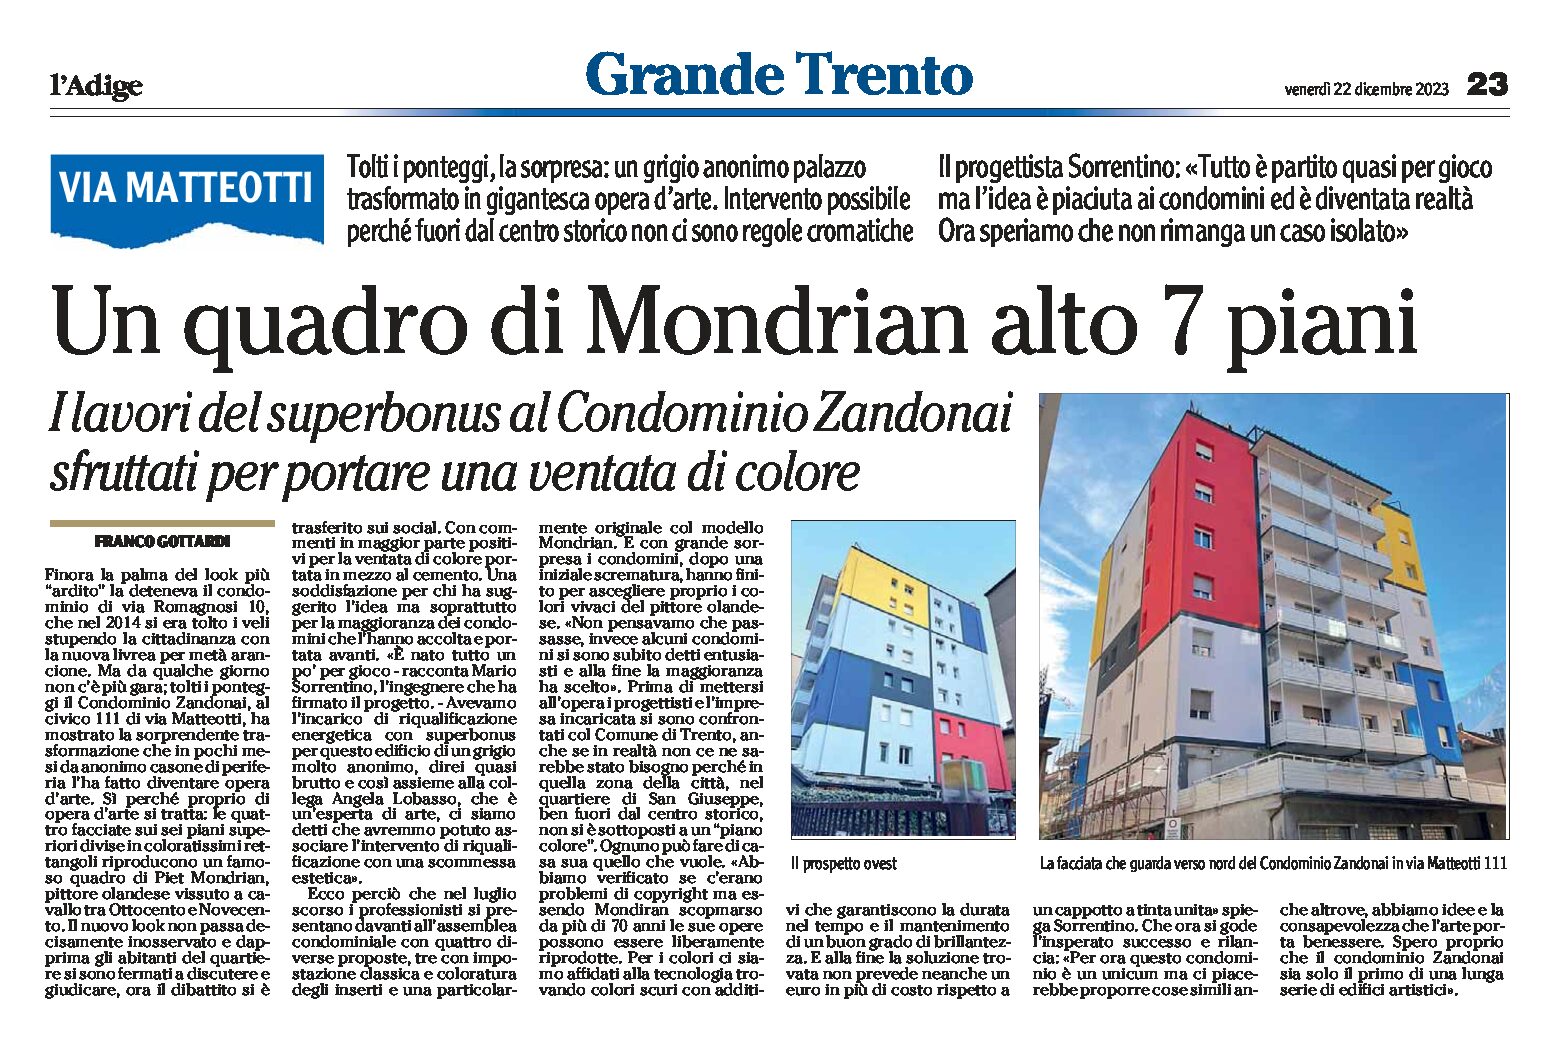 Trento, via Matteotti: Condominio Zandonai, un quadro di Mondrian alto 7 piani